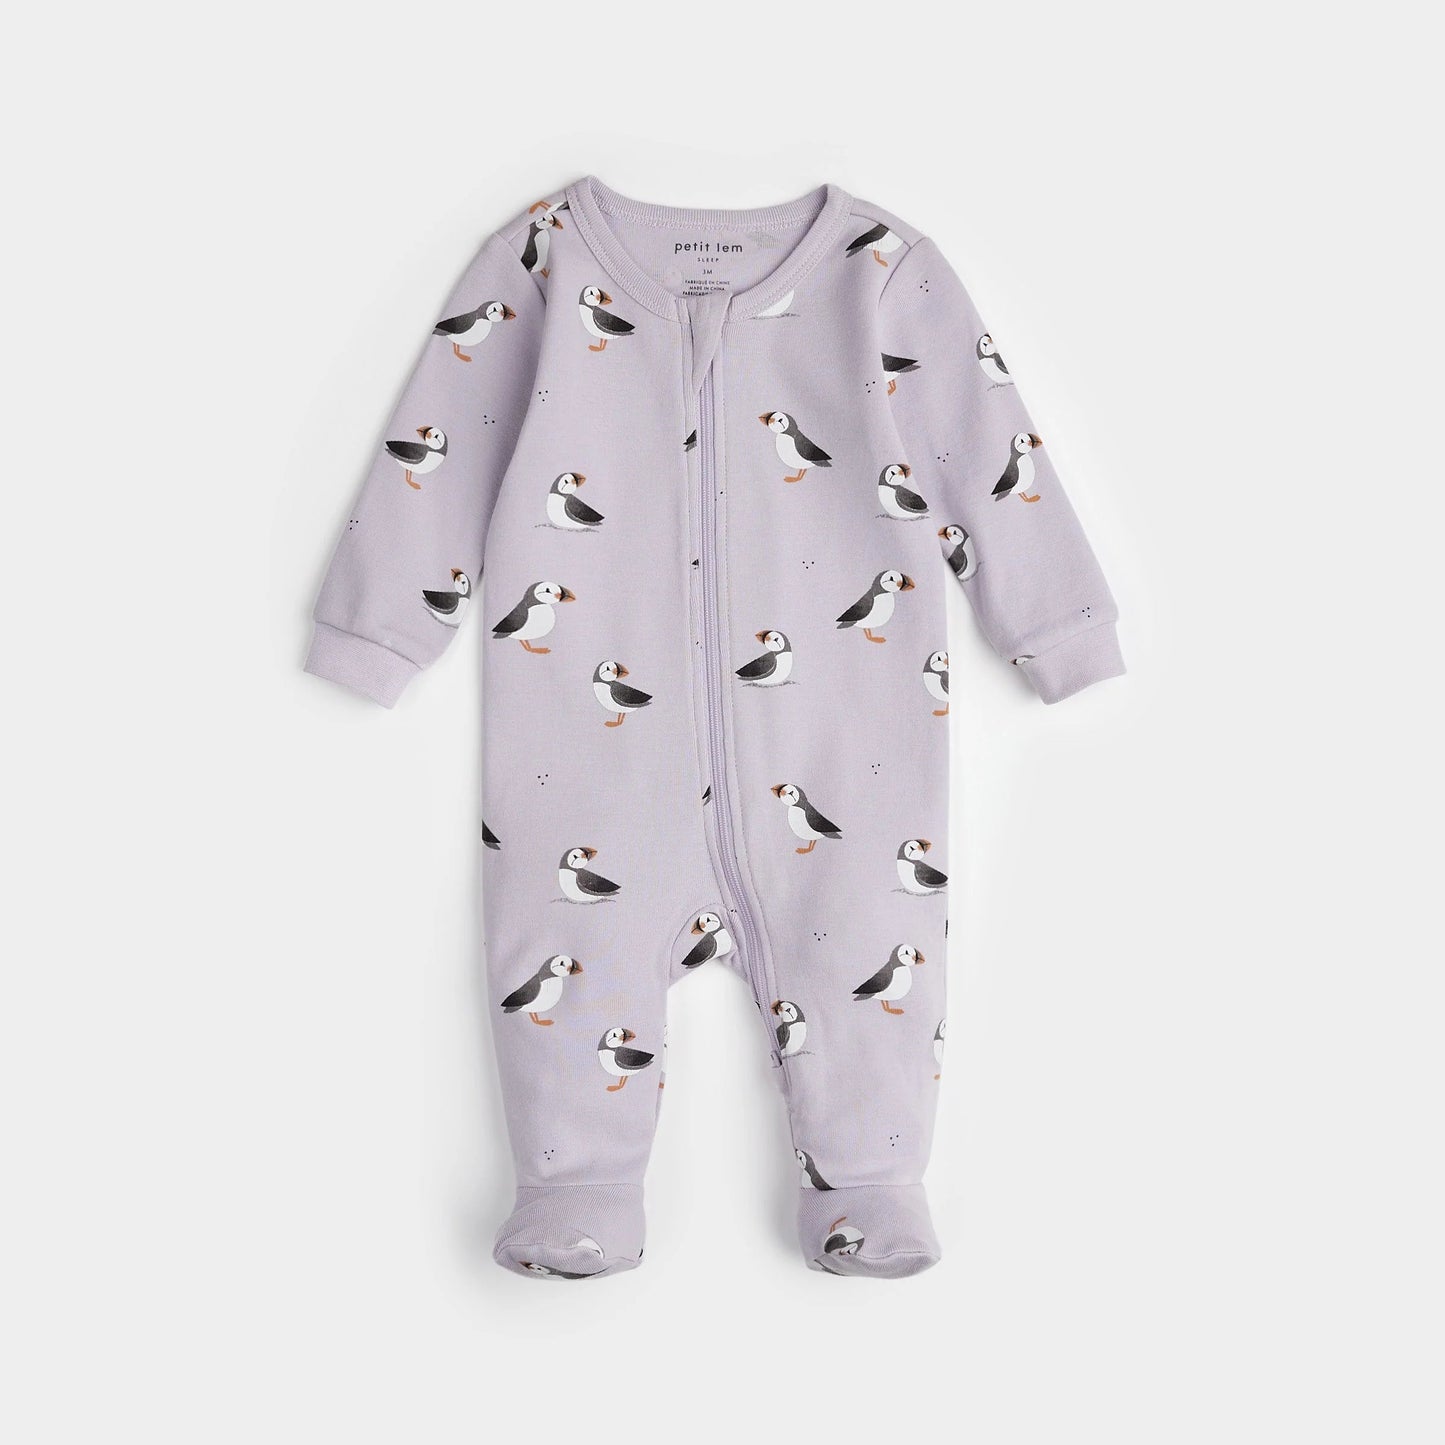 Pyjama lilas à imprimés macareux - Petit Lem - Boutique friperie le placard de Jeanne et cie